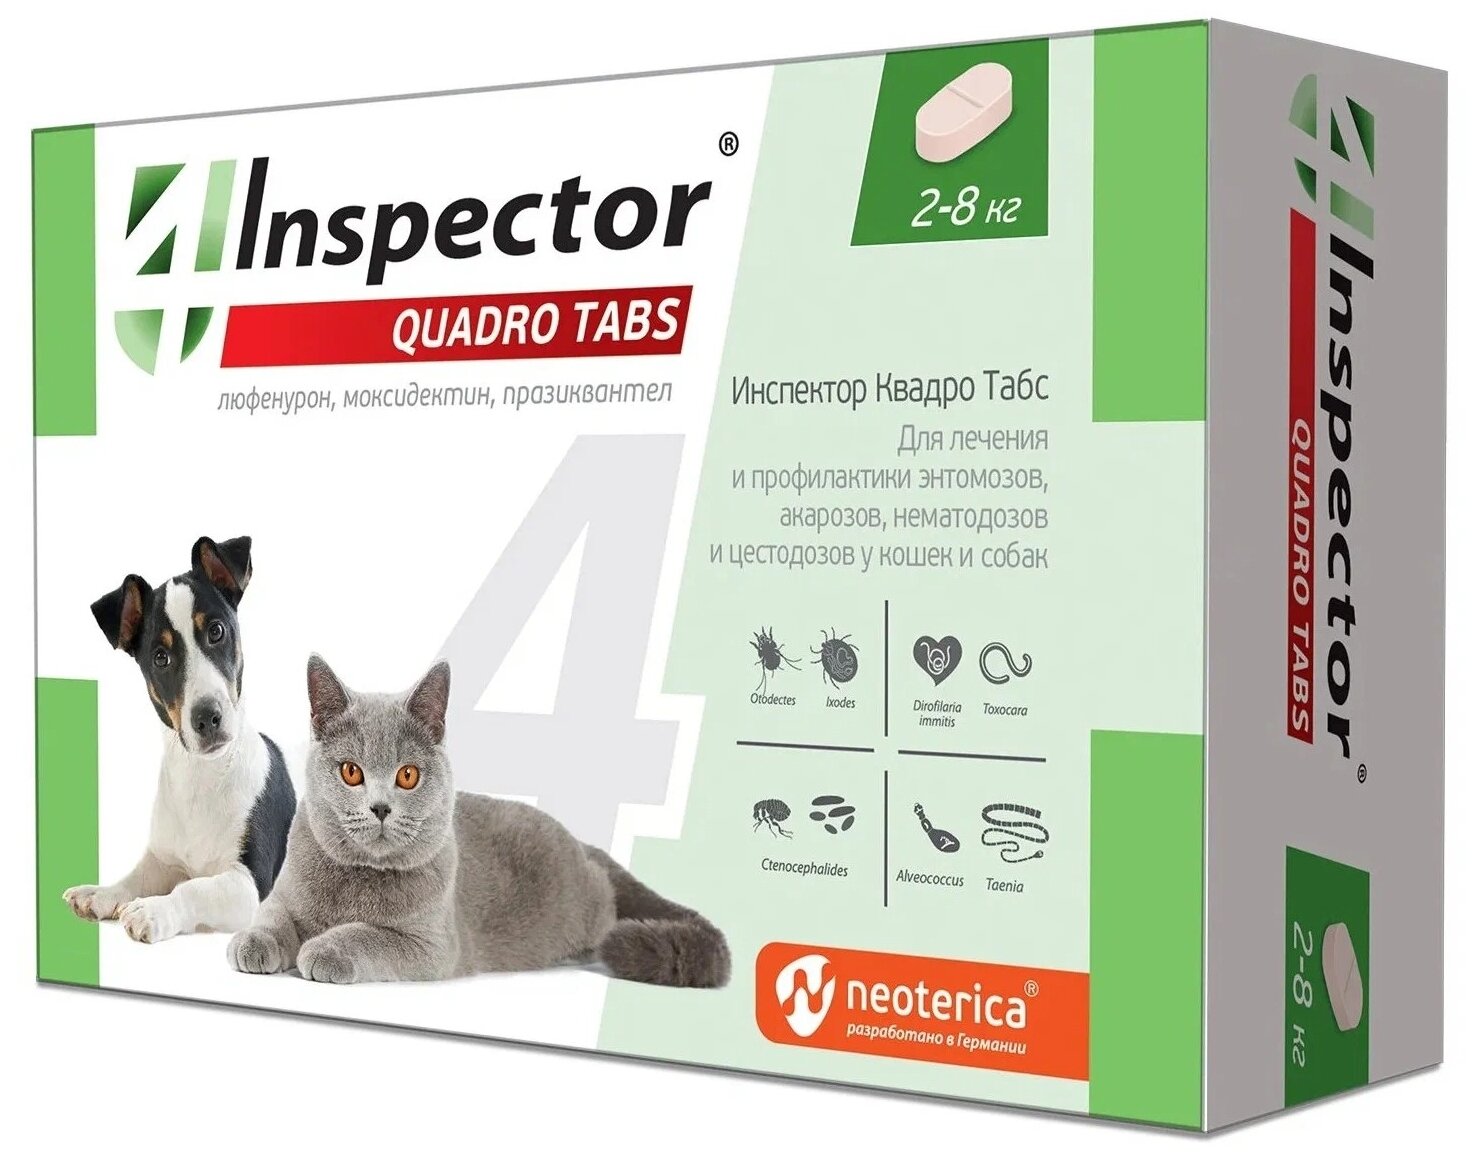 Таблетки Neoterica Inspector Quadro Tabs для кошек и собак 2-8 кг (4 таблетки) // Для лечения и профилактики паразитарных болезней